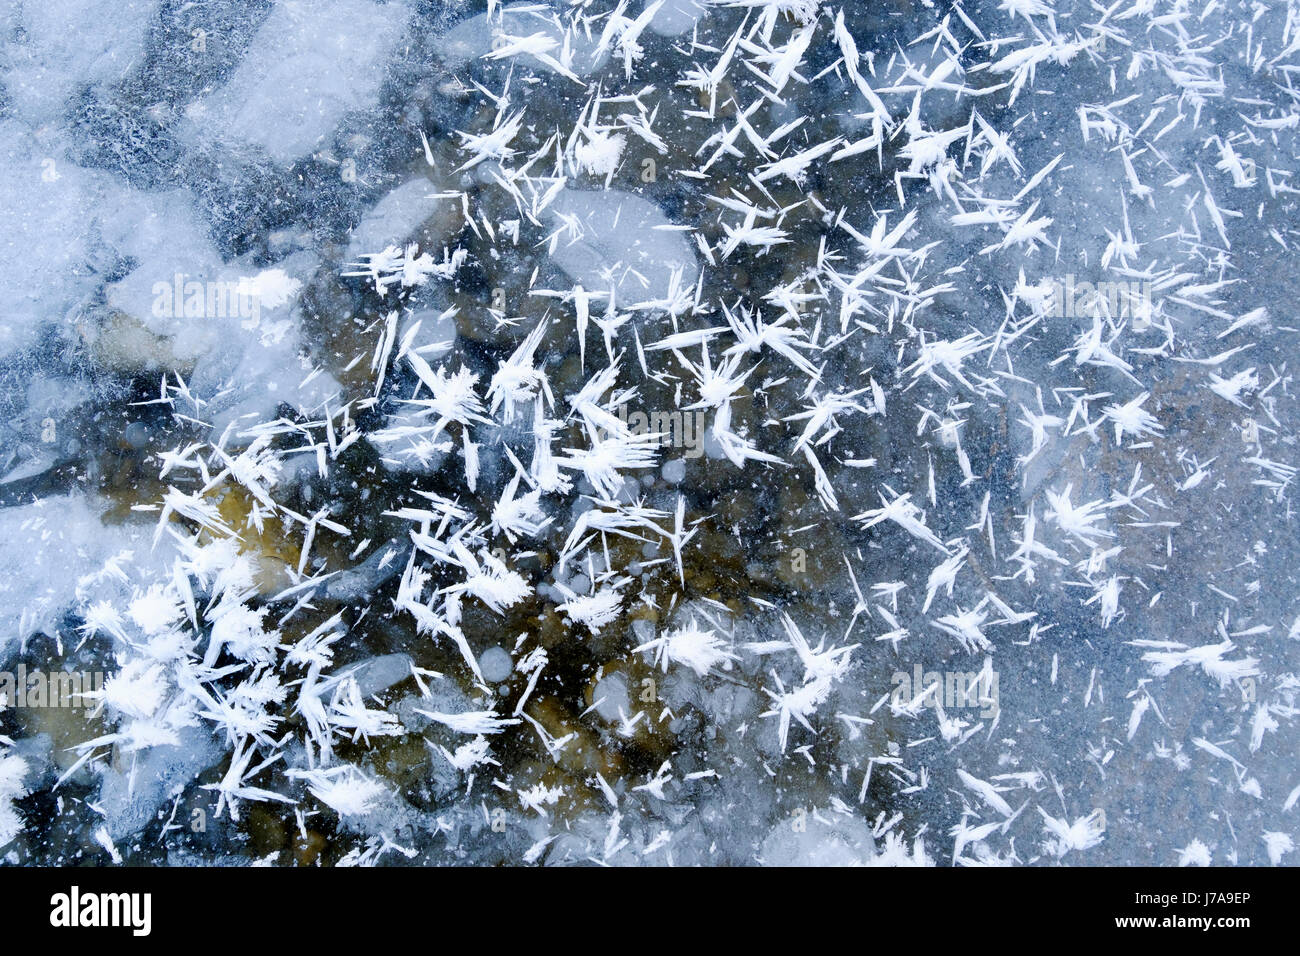 Eiskristalle auf Eisschicht, Naturschutzgebiet Isarauen, Oberbayern, Bayern, Deutschland Foto de stock